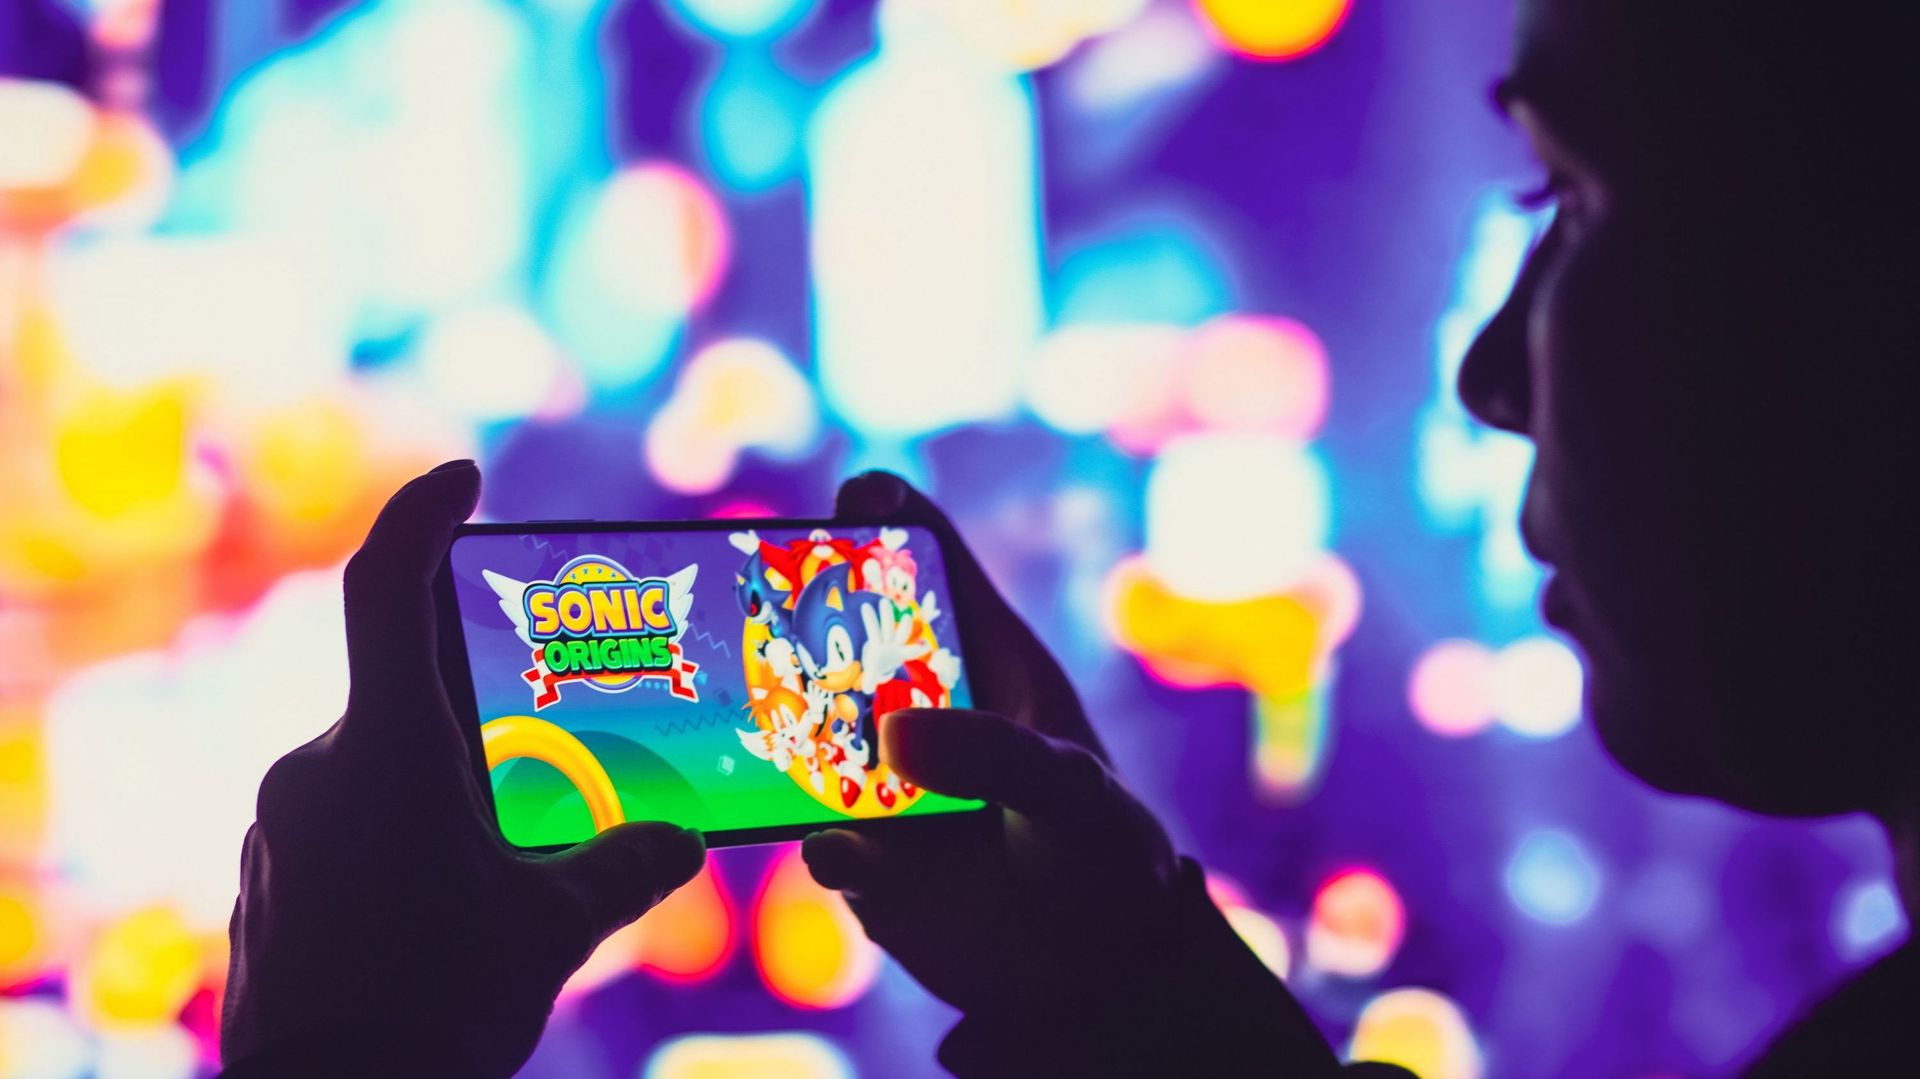 Sega a racheté le studio finlandais Rovio, connu pour être derrière le jeu Angry Birds. Cela qui pourrait indiquer un nouvel intérêt pour le marché du jeu mobile de la part du géant japonais.